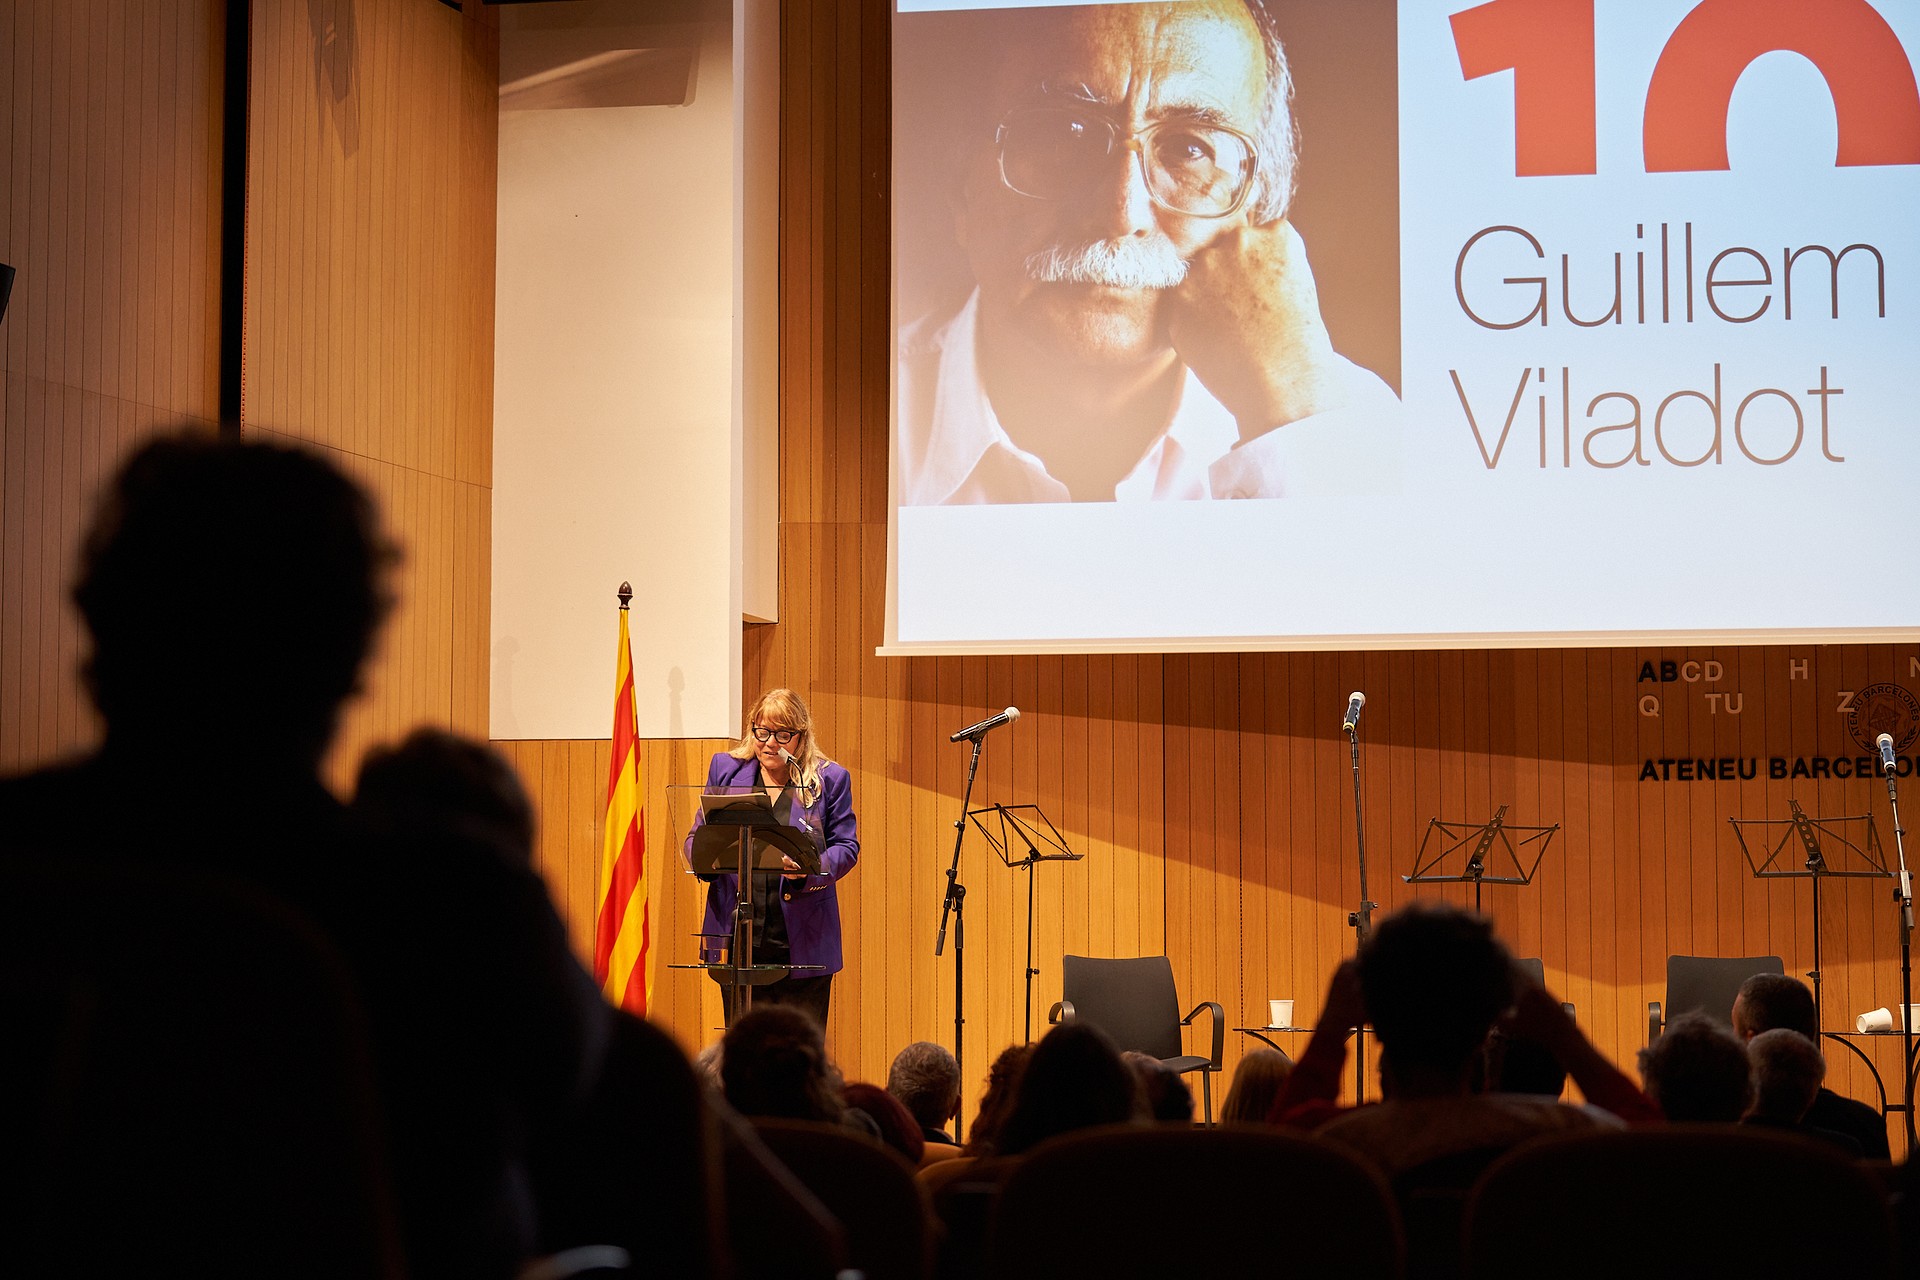 La consellera Garriga durant l'acte d'homenatge a Guillem Viladot a l'Ateneu Barcelonès